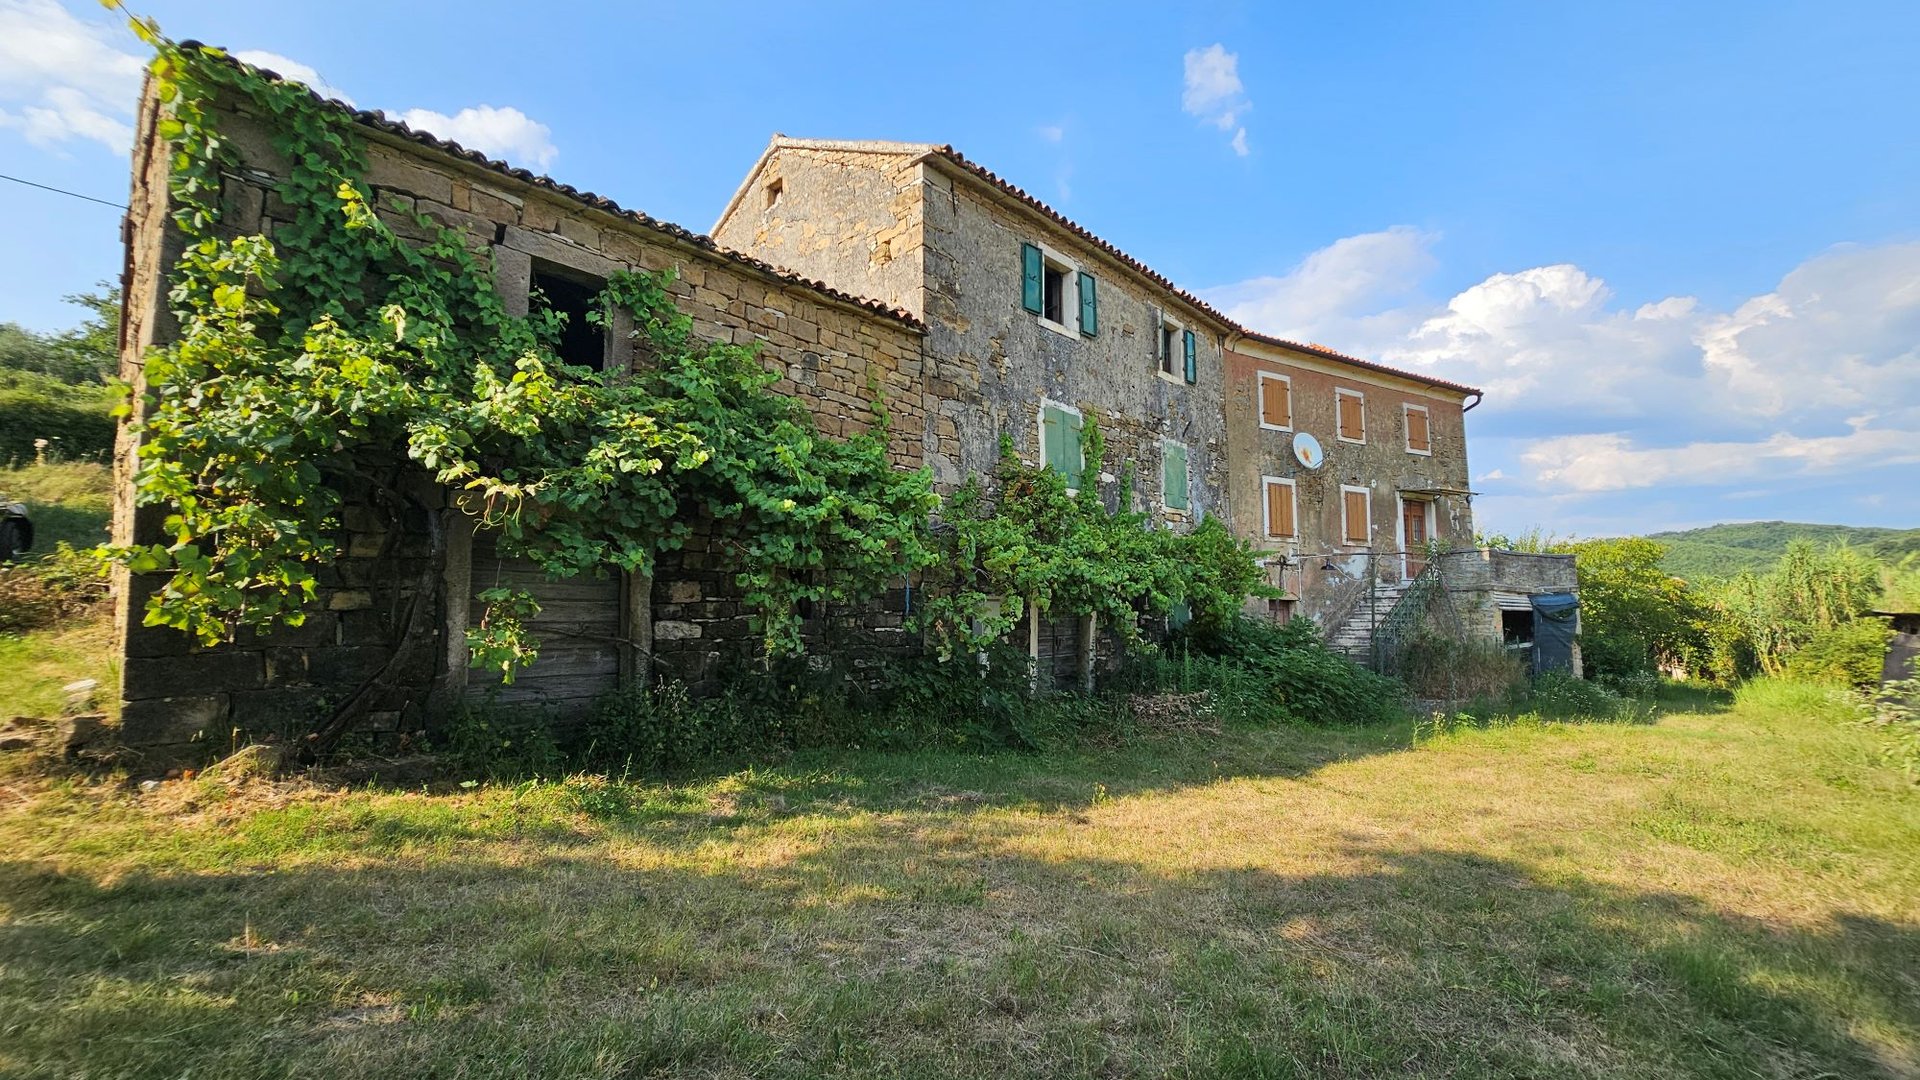 Le  case in pietra con ampio terreno  nei pressi di Grisignana  in Istria